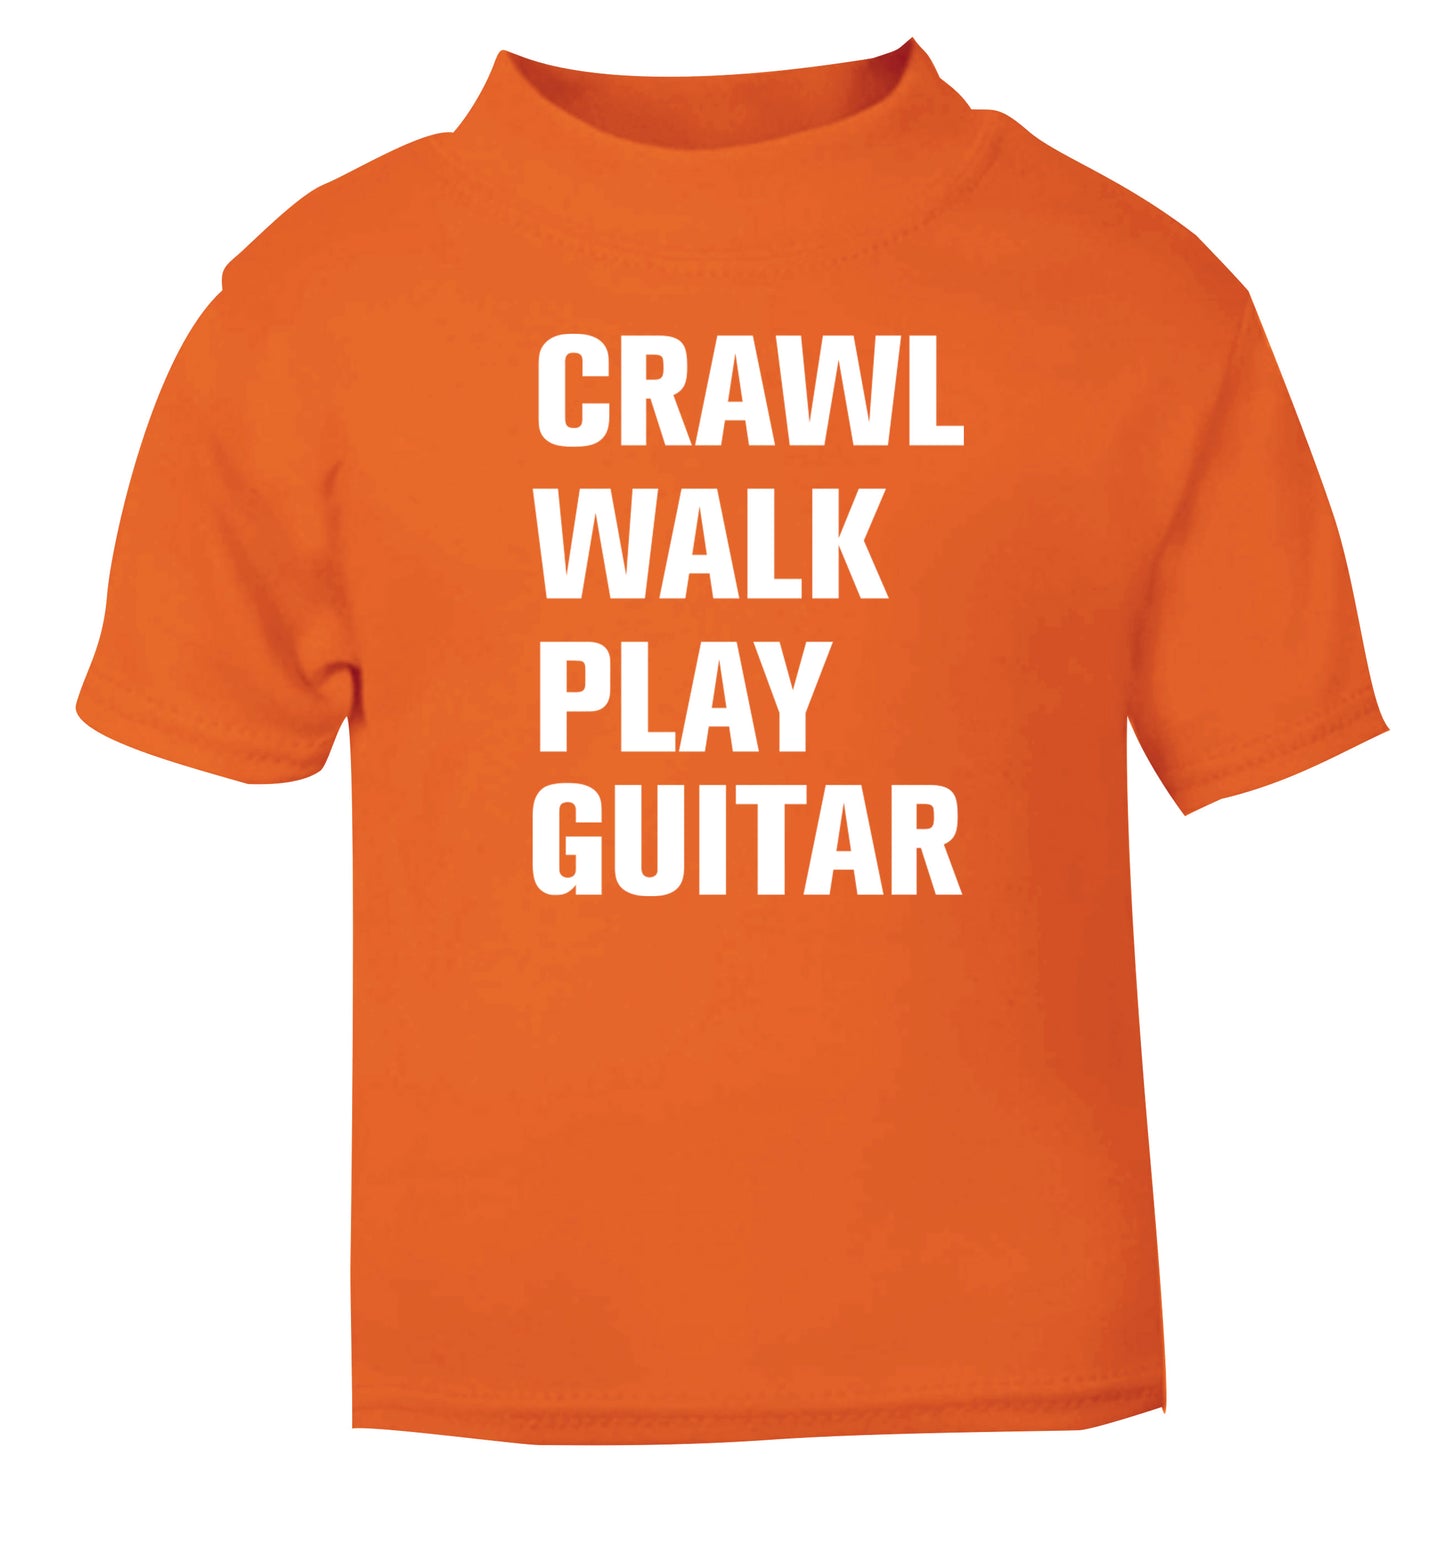 Crawl walk play guitar orange Baby Toddler Tshirt 2 Years